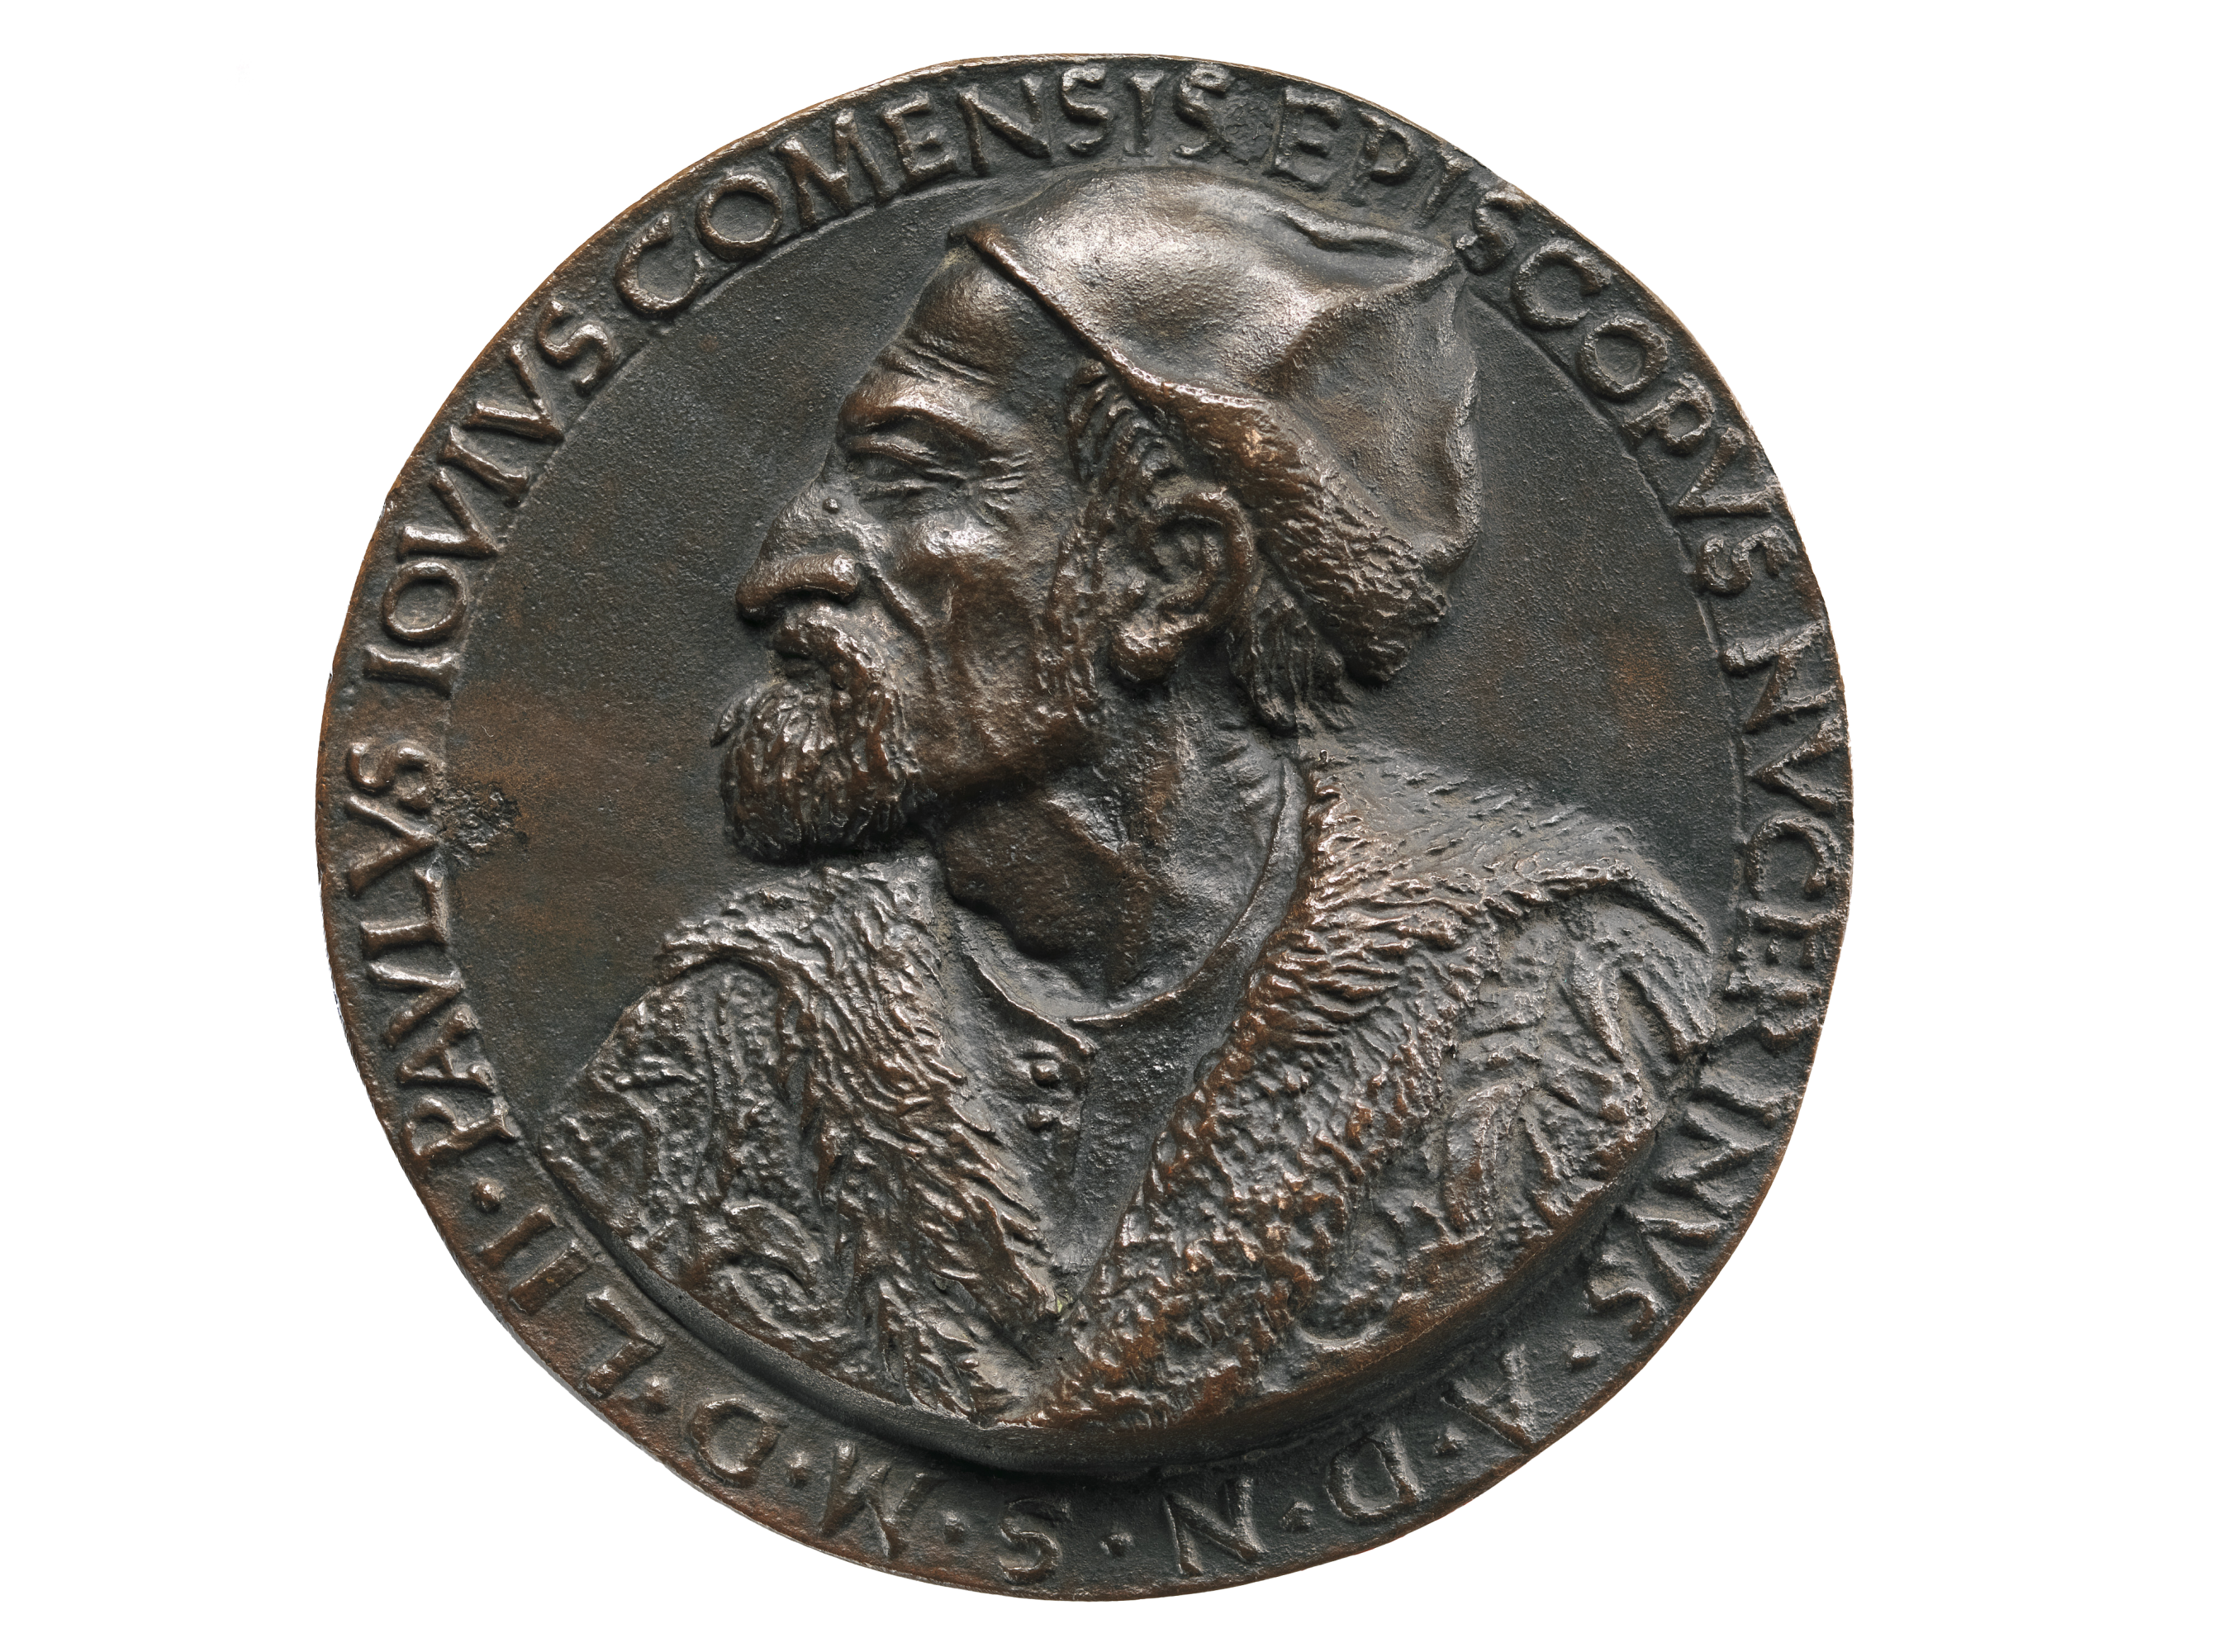 Portrait Medal of Paolo Giovio